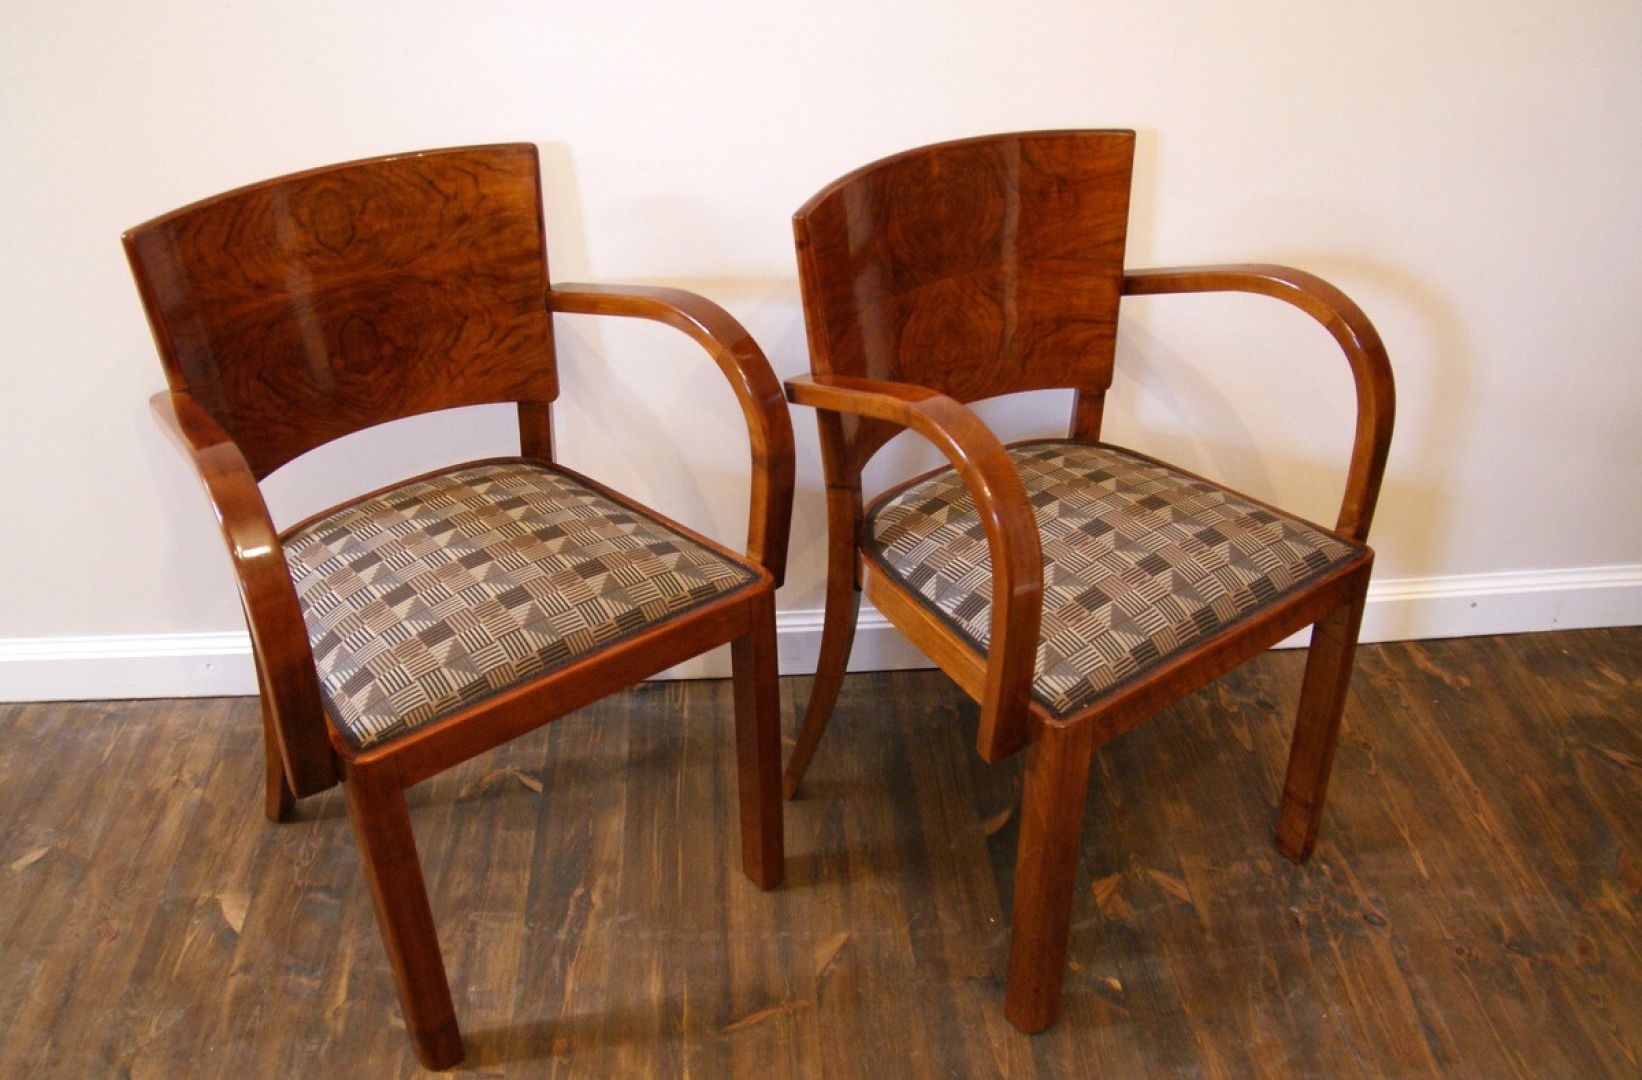 Krzesła z podłokietnikami w stylu Art Deco, lata 30-te.XXw., okleina orzech, drewno brzoza (stan po renowacji).
Fot. Starych Mebli Czar